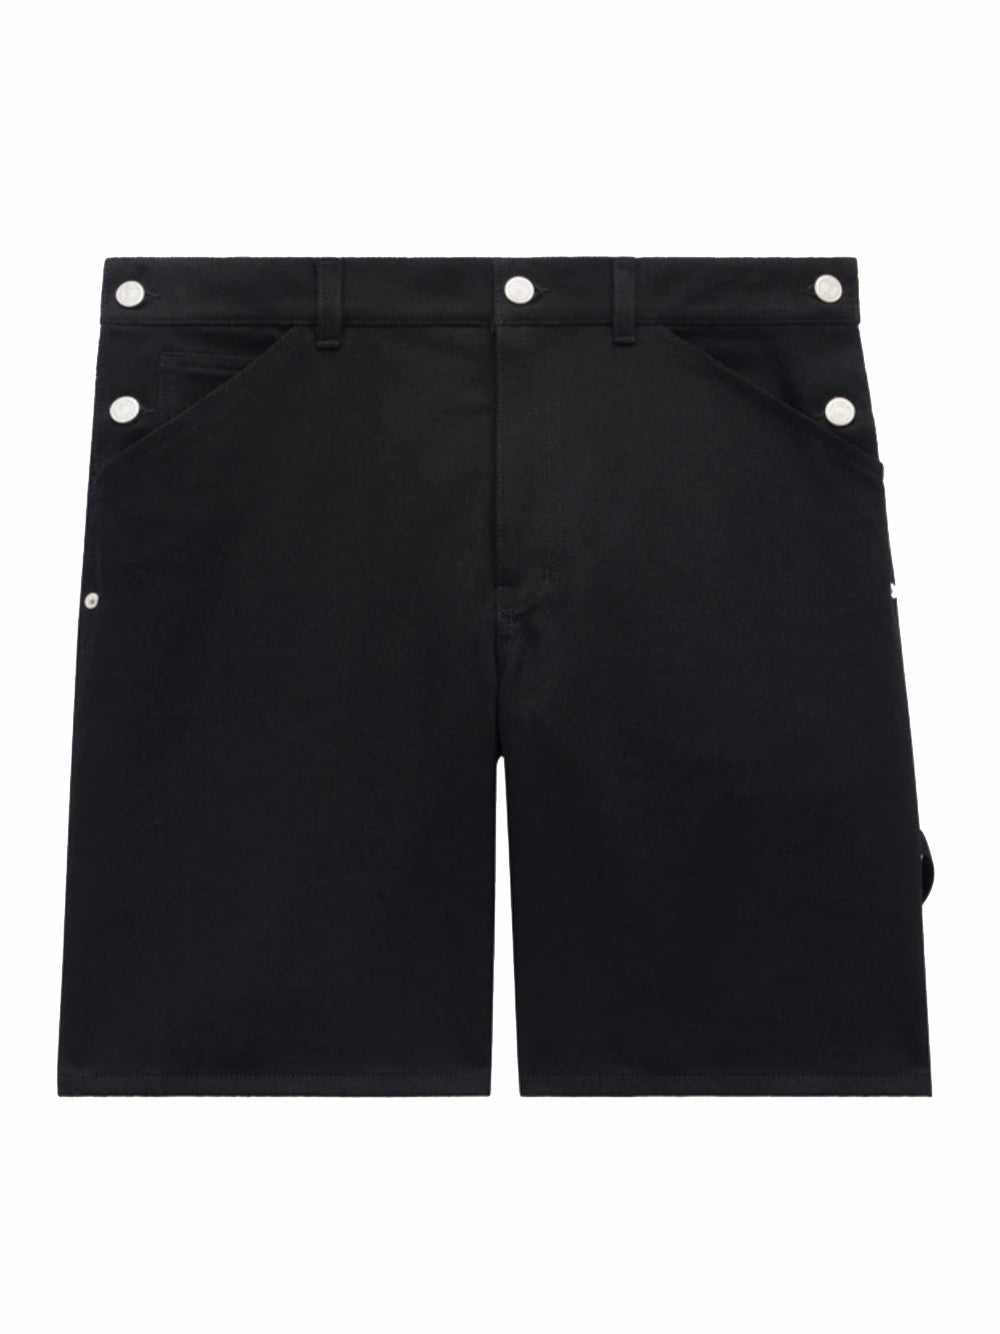 Sailor Denim Shorts (Black)